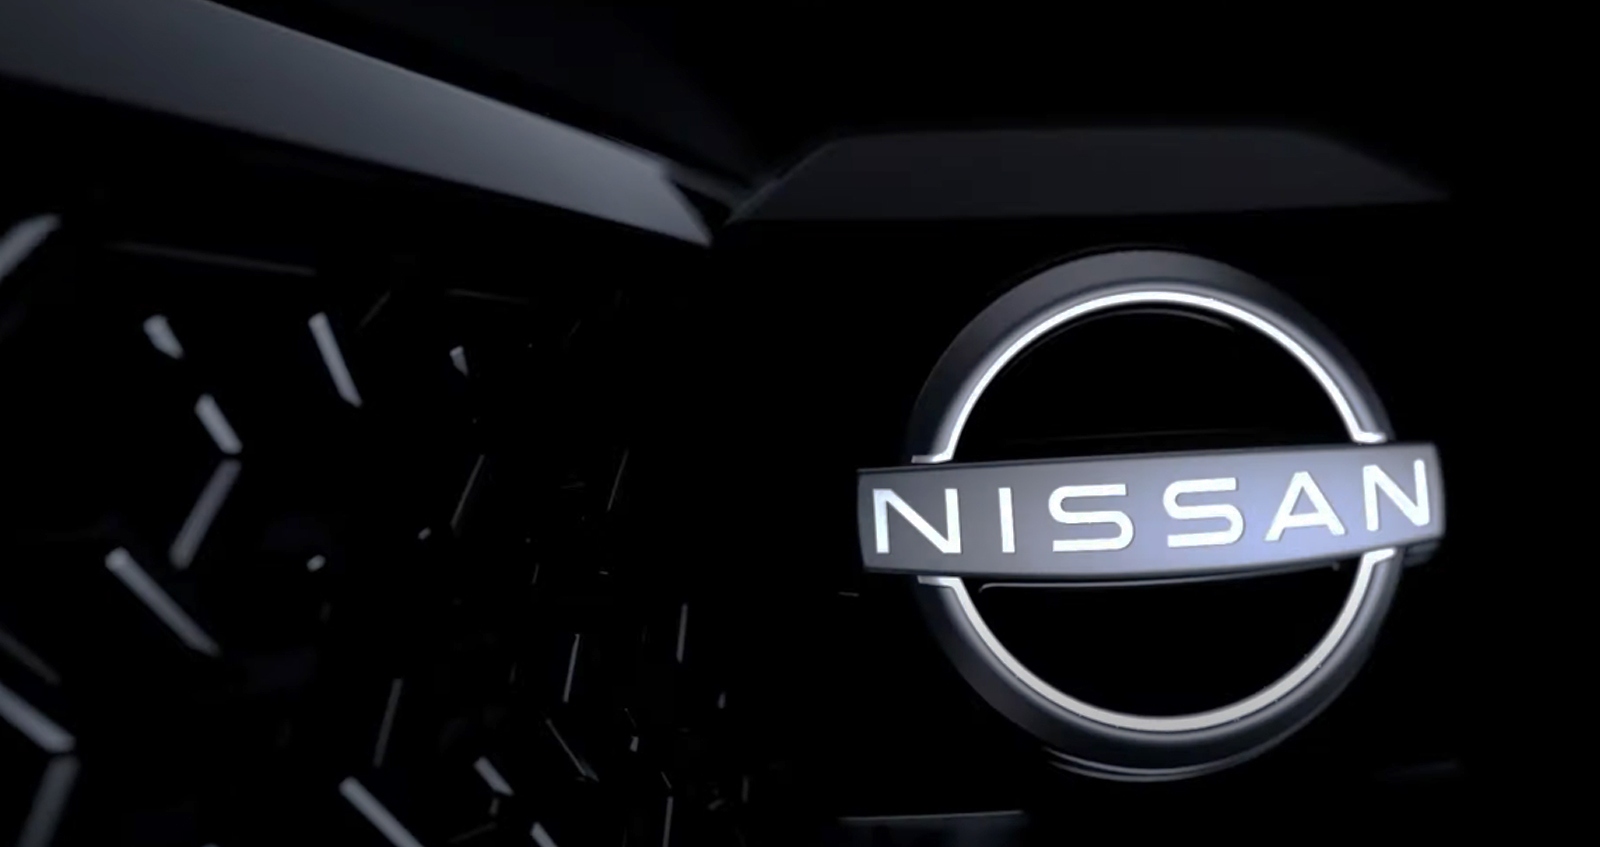 ปล่อย VDO ทีเซอร์ Nissan รถตู้ ไฟฟ้าคันใหม่ เปิดตัวยุโรป 27 กันยายน 2021